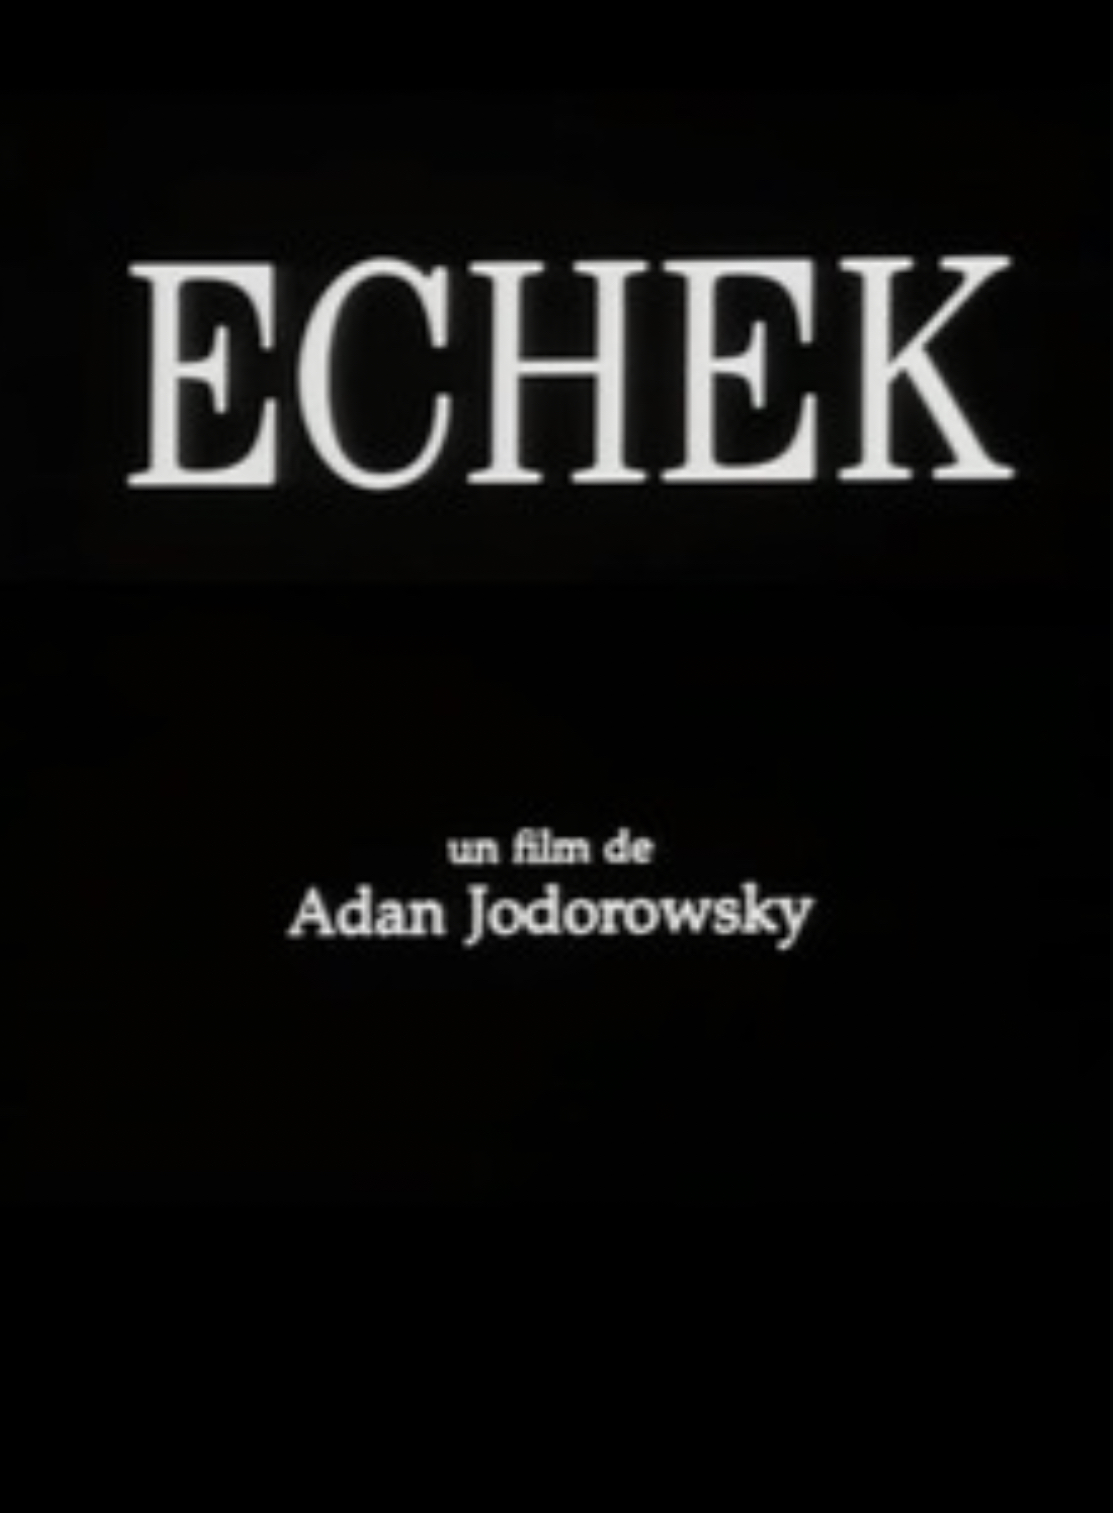 Echek (2000)